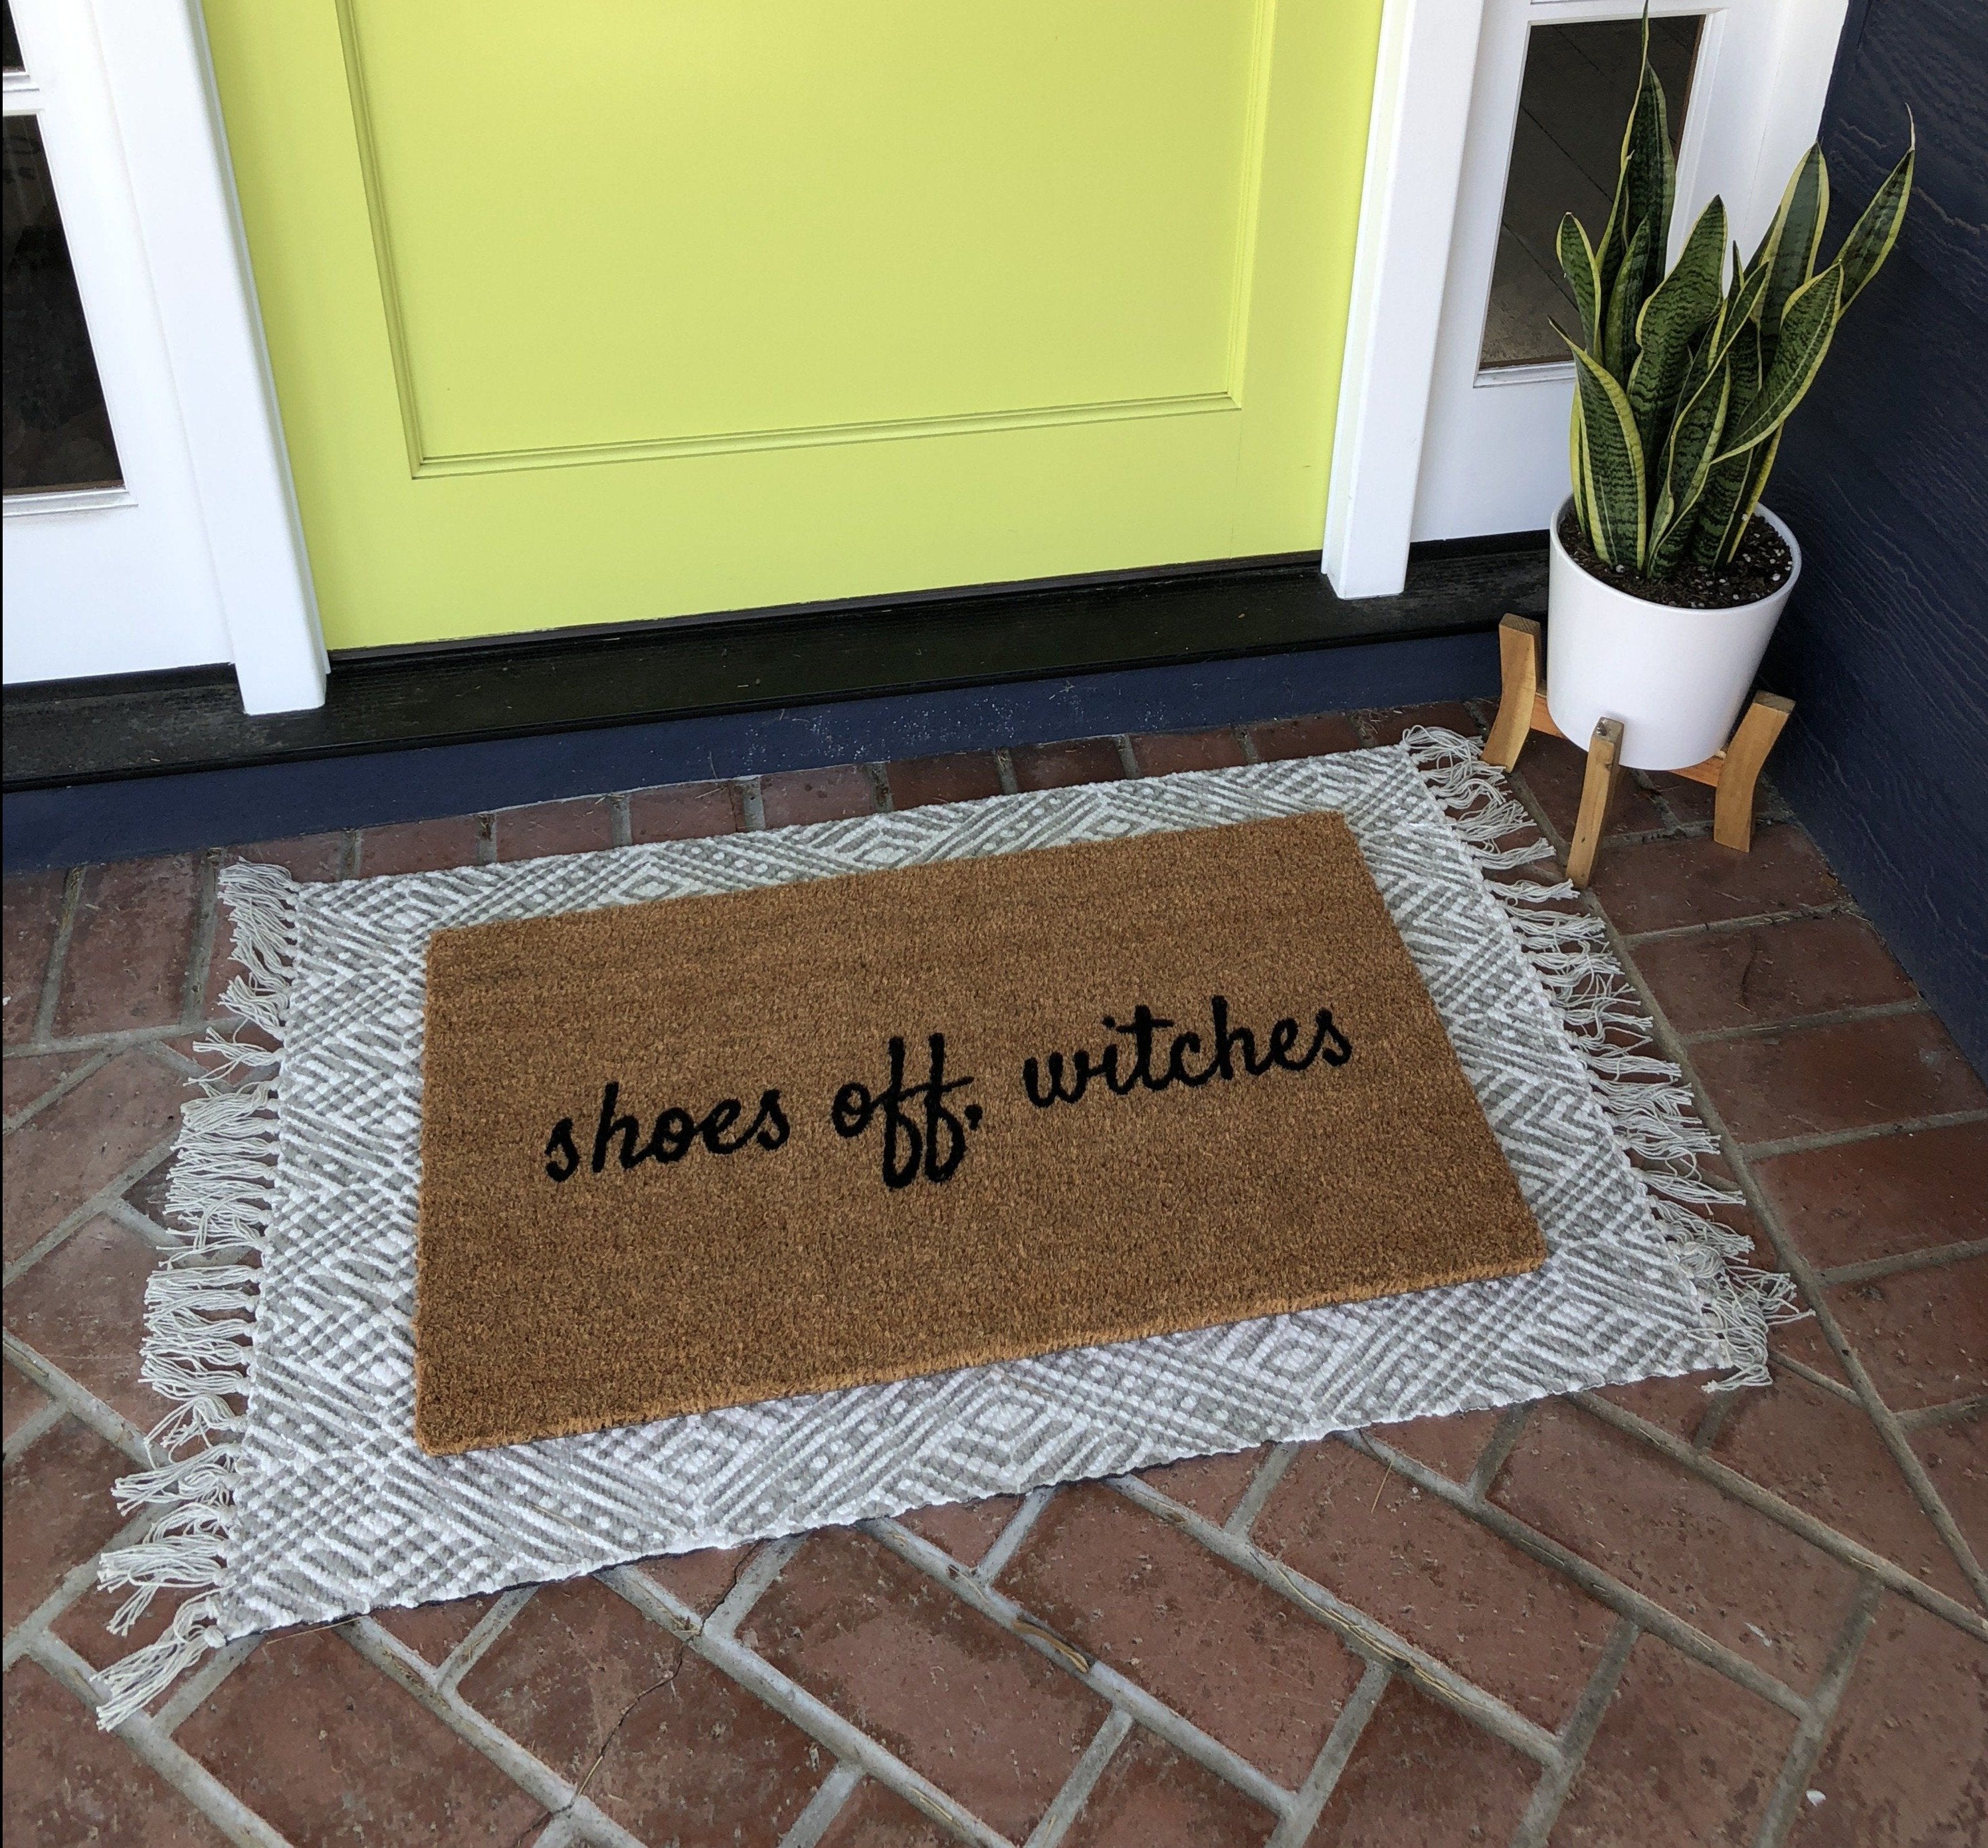 https://nickel-designs.com/cdn/shop/products/doormat-shoes-off-witches-funny-halloween-doormat-5@2x.JPG?v=1627318678